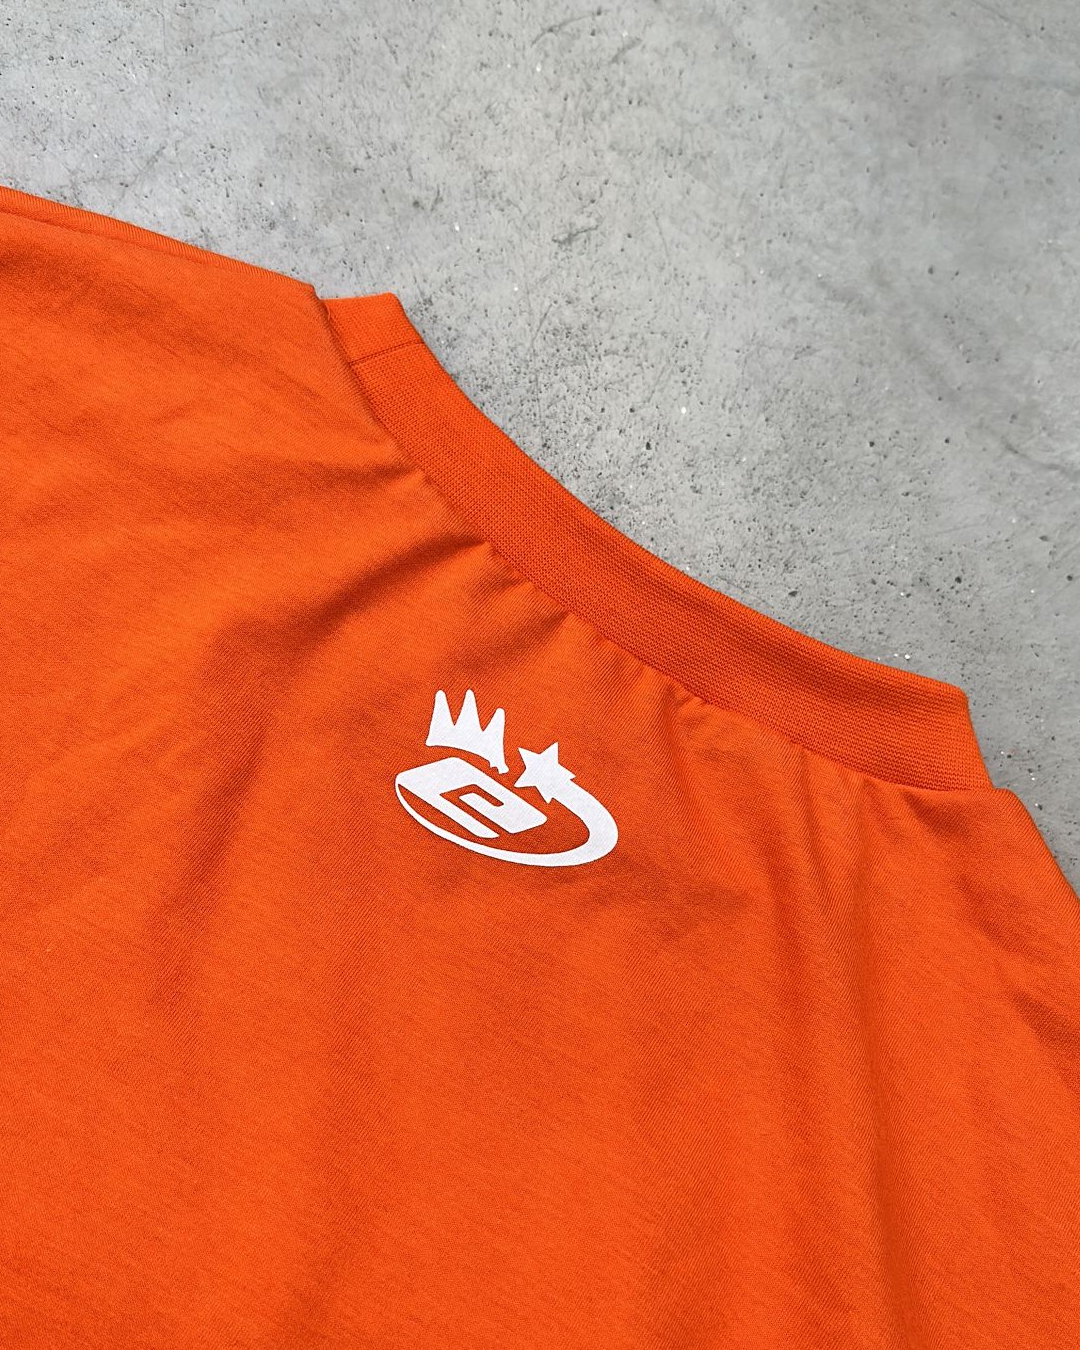 Graffiti T-Shirt Vibrant Orange